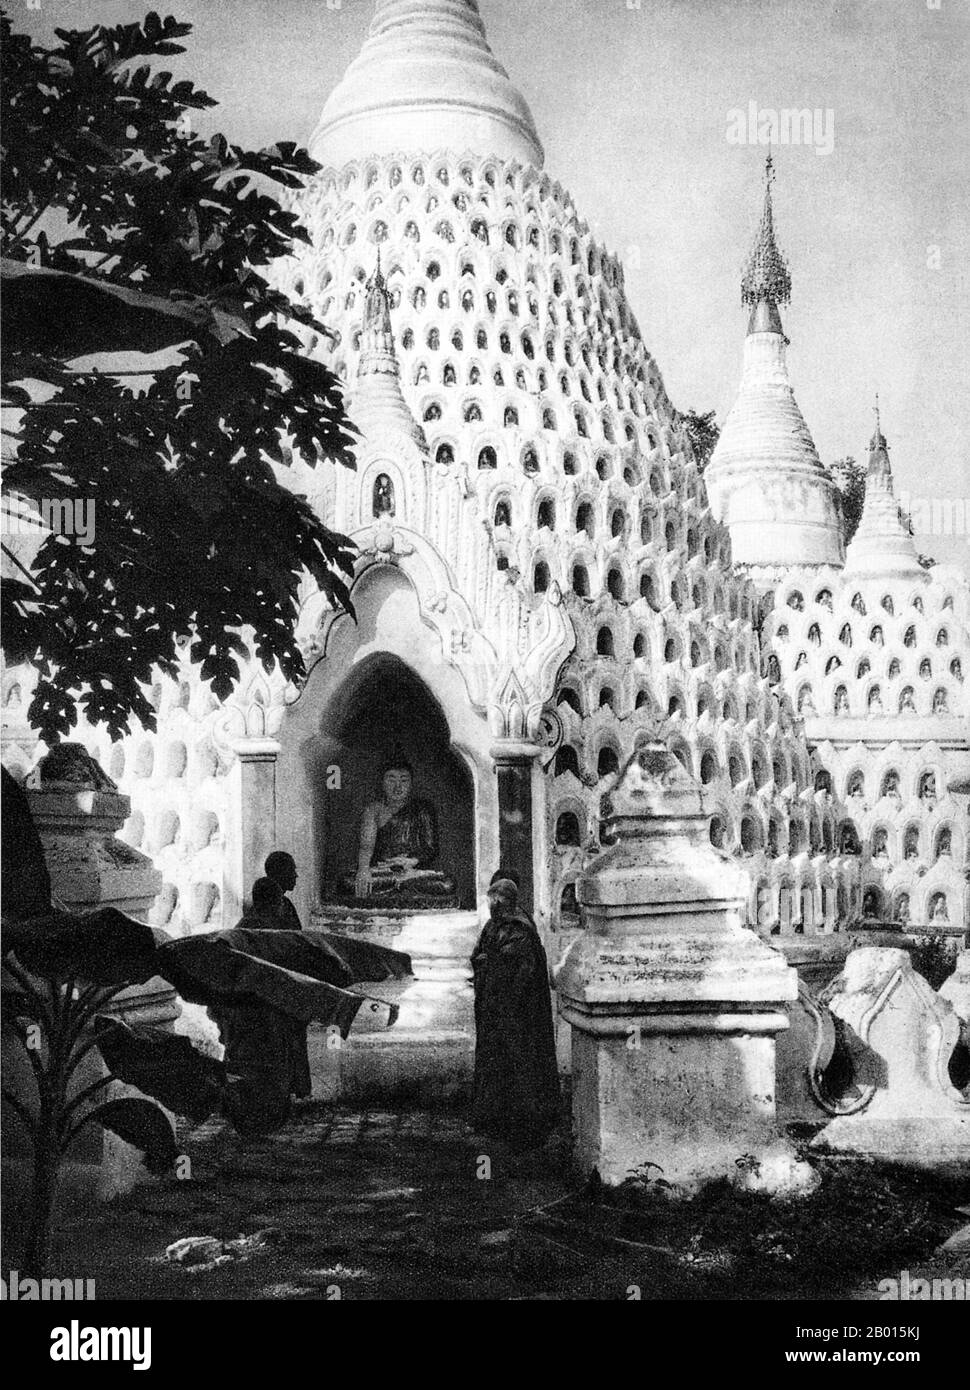 Birmania/Myanmar: Chedis in un monastero di Ava, c.. anni '20. Notate che ci sono molte nicchie sugli stupa per mettere offerte e piccole immagini di Buddha. AVA fu capitale della Birmania dal 1364 al 1841 e fu fondata da re Thadominbya su un'isola artificiale alla confluenza dell'Irrawaddy e del Myitnge creato scavando un canale che collega i due fiumi. Prima di questo, Sagaing era stato capitale, ma dopo che Sagaing cadde allo Shan, la corte si spostò attraverso il fiume ad Ava. Foto Stock